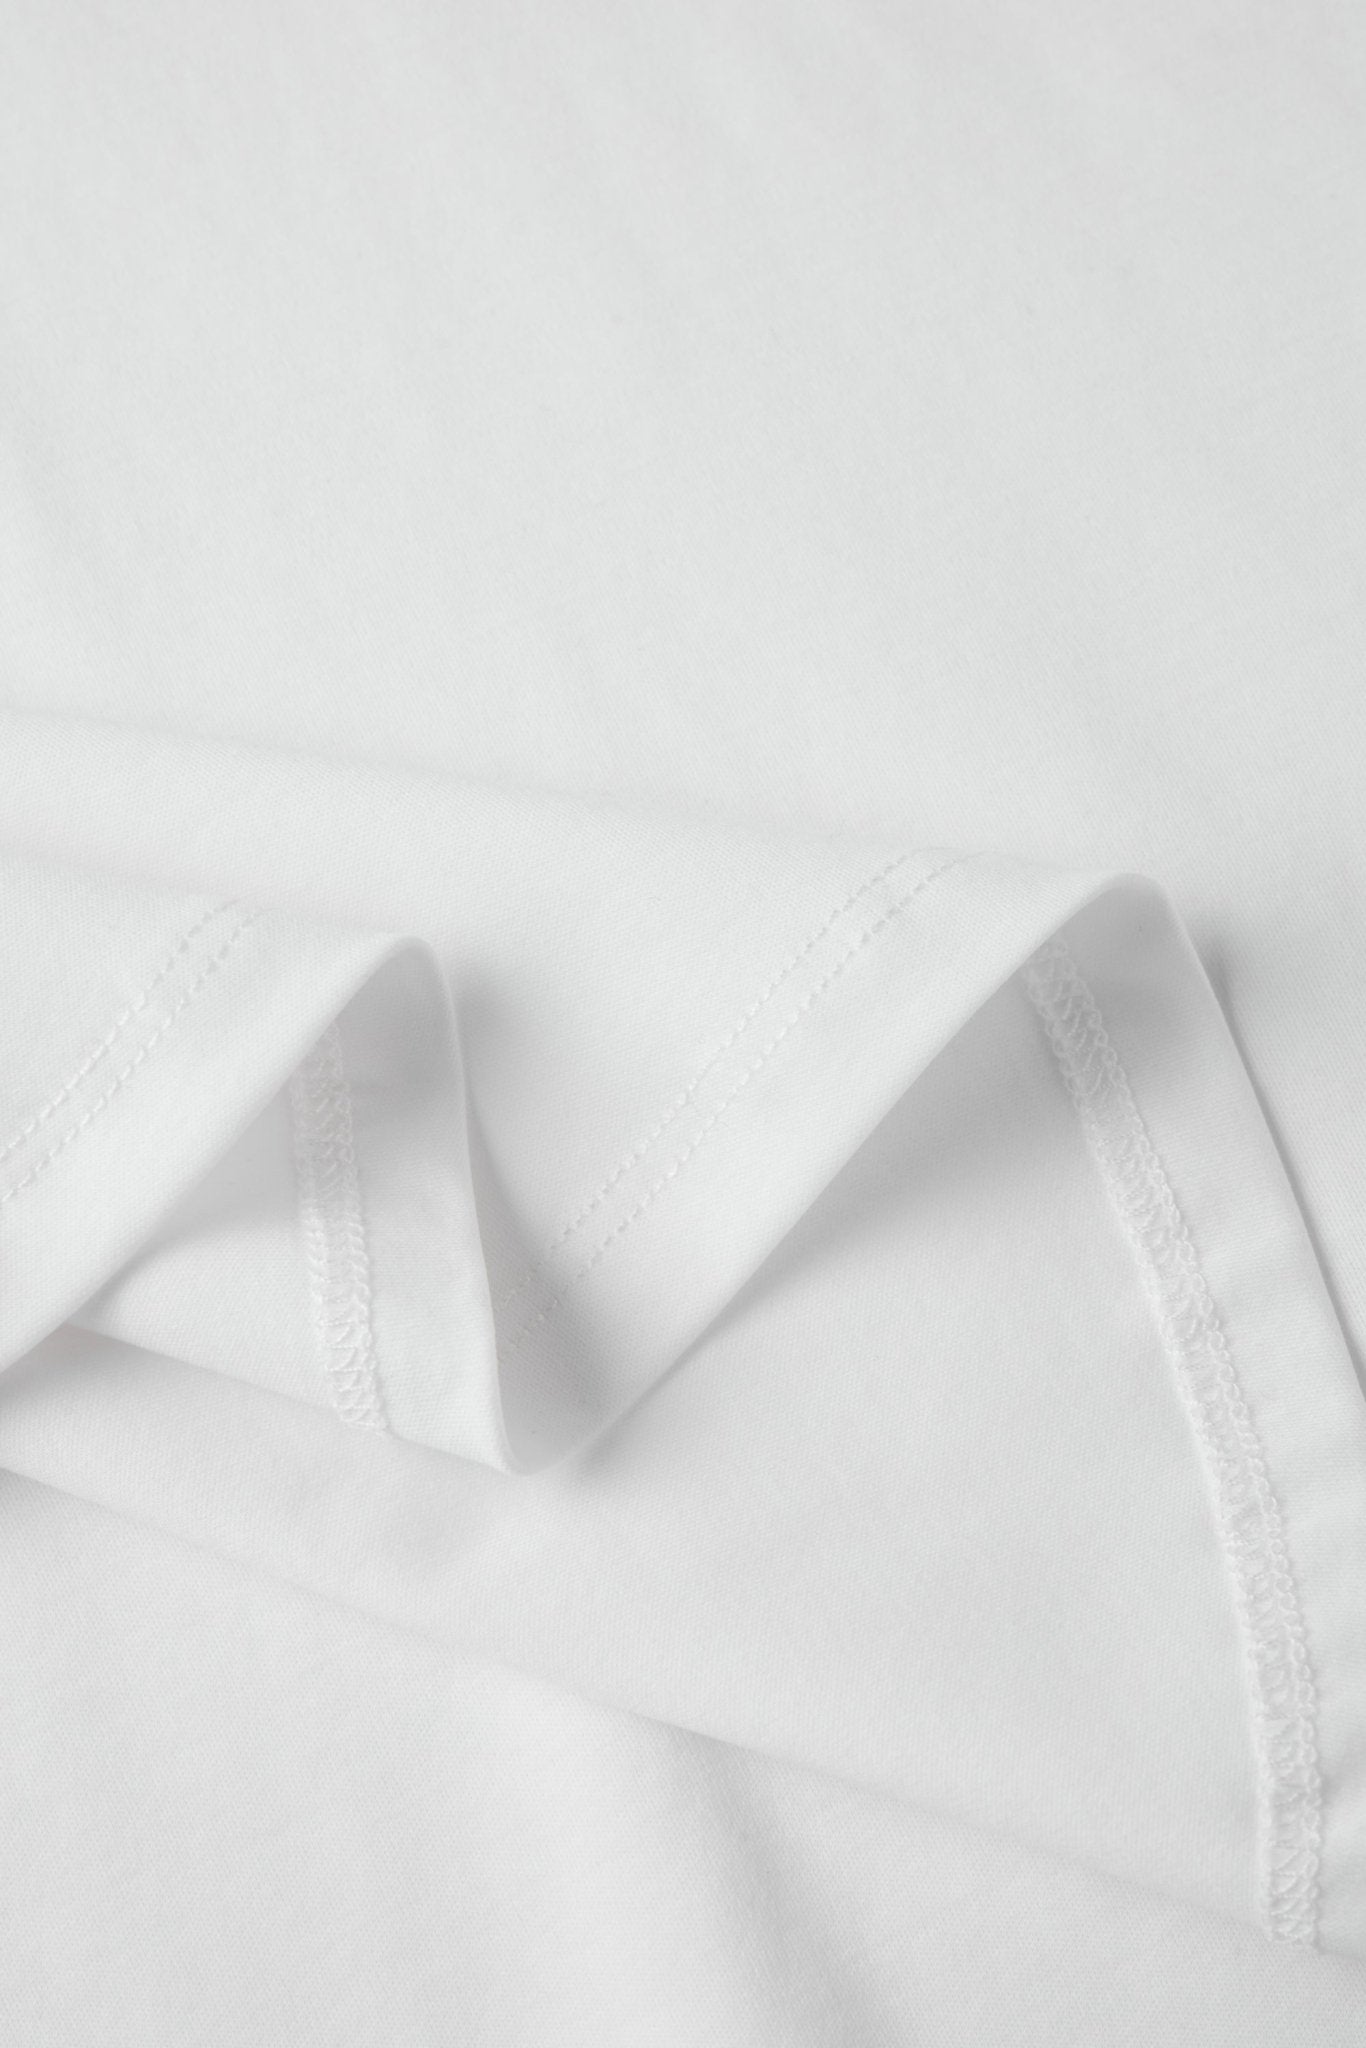 CECE supima-cotton top (White) - STELLAM